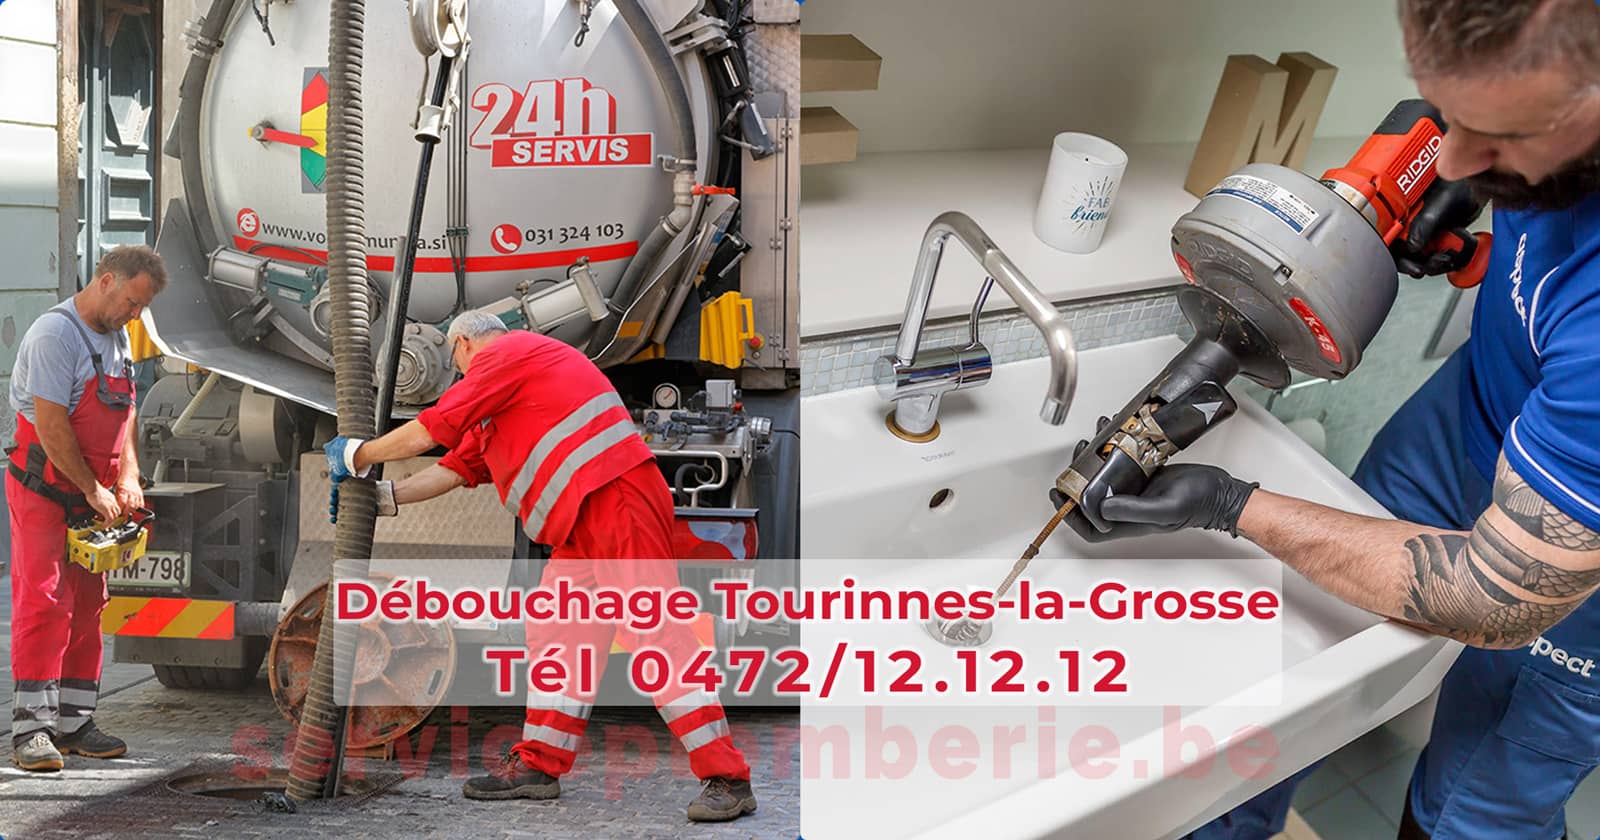 Débouchage Tourinnes-la-Grosse d'égout Service Plomberie Tél 0472/12.12.12